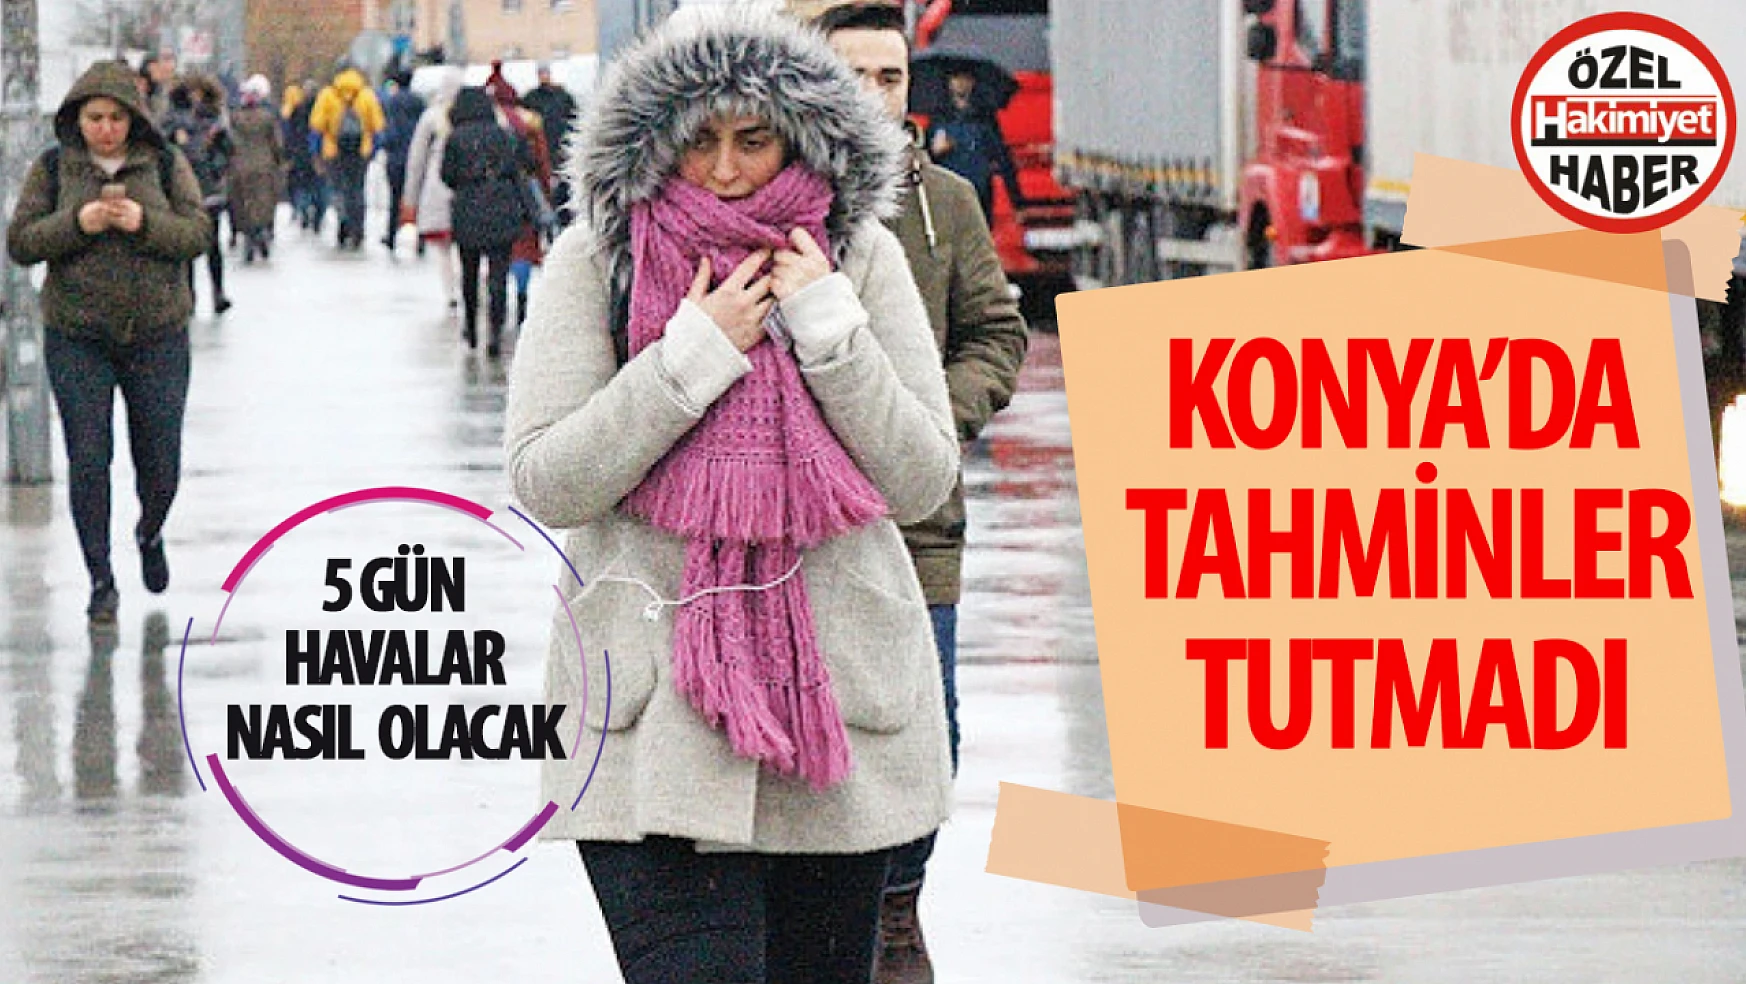 Konya'da tahminler tutmadı: Yağış yok, soğuk var!  Konya'da havalar nasıl olacak?